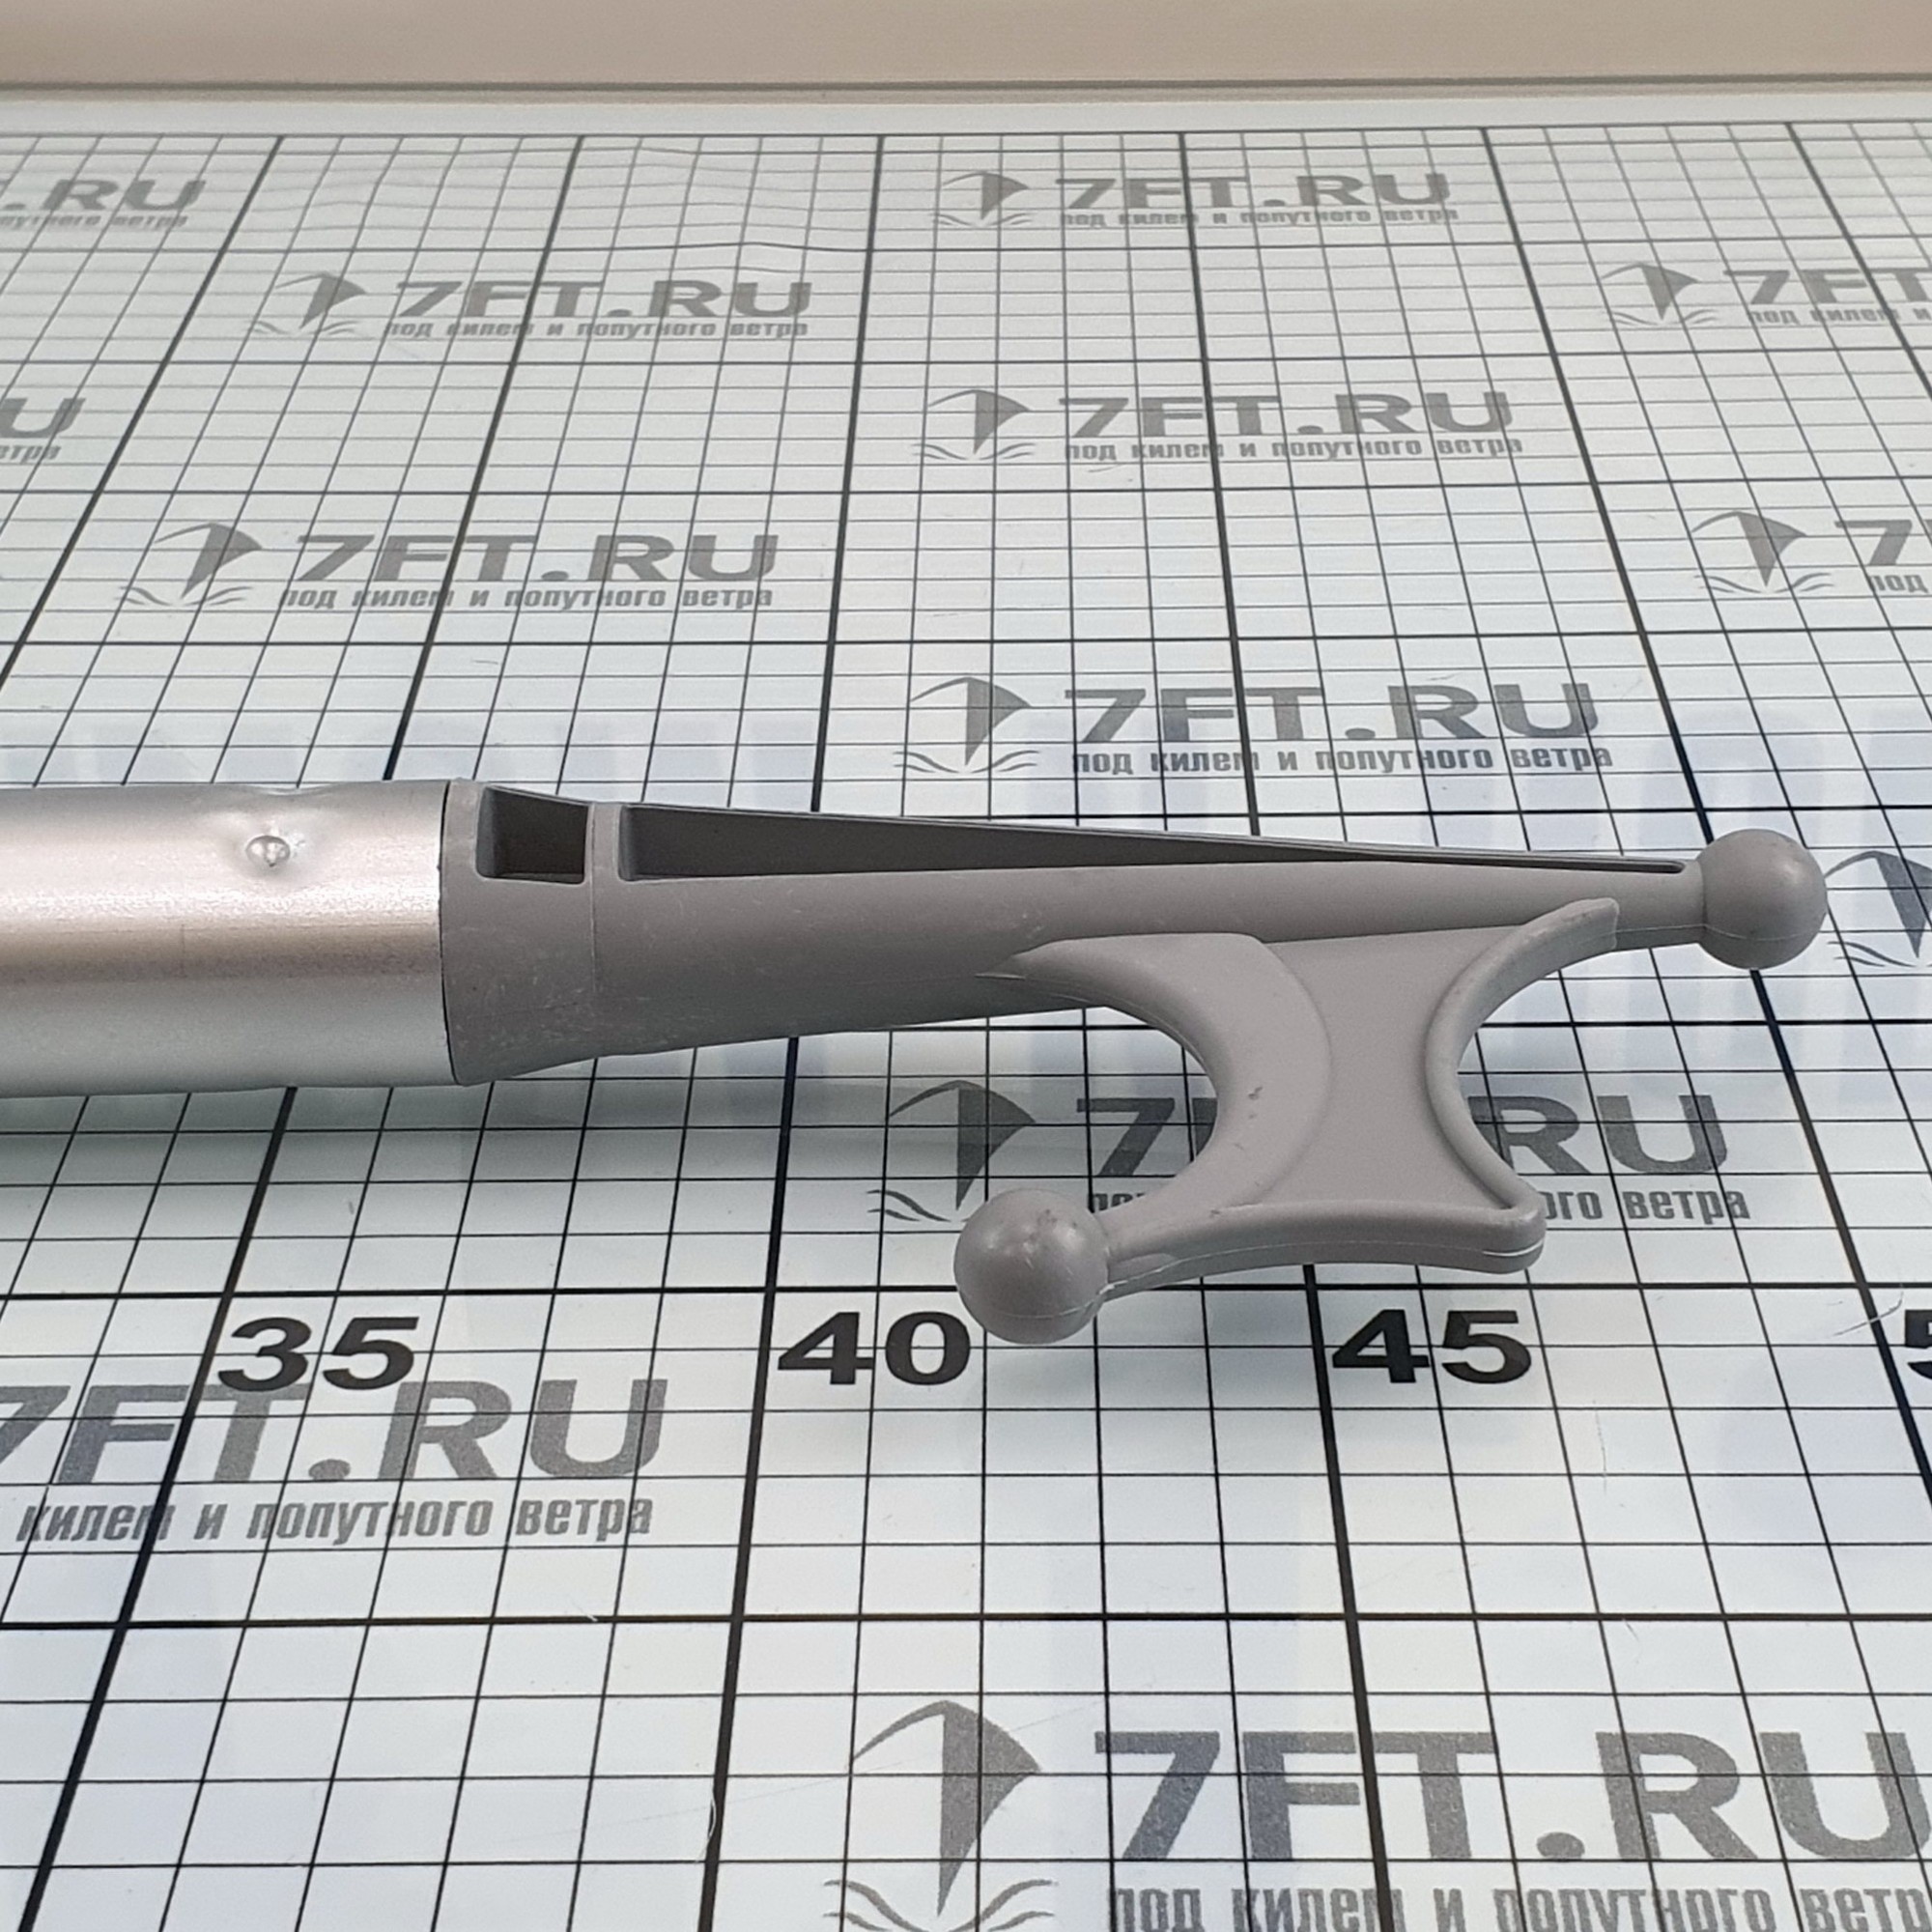 Купить Крюк отпорный из анодированного алюминия TREM R0130210 210 см 7ft.ru в интернет магазине Семь Футов